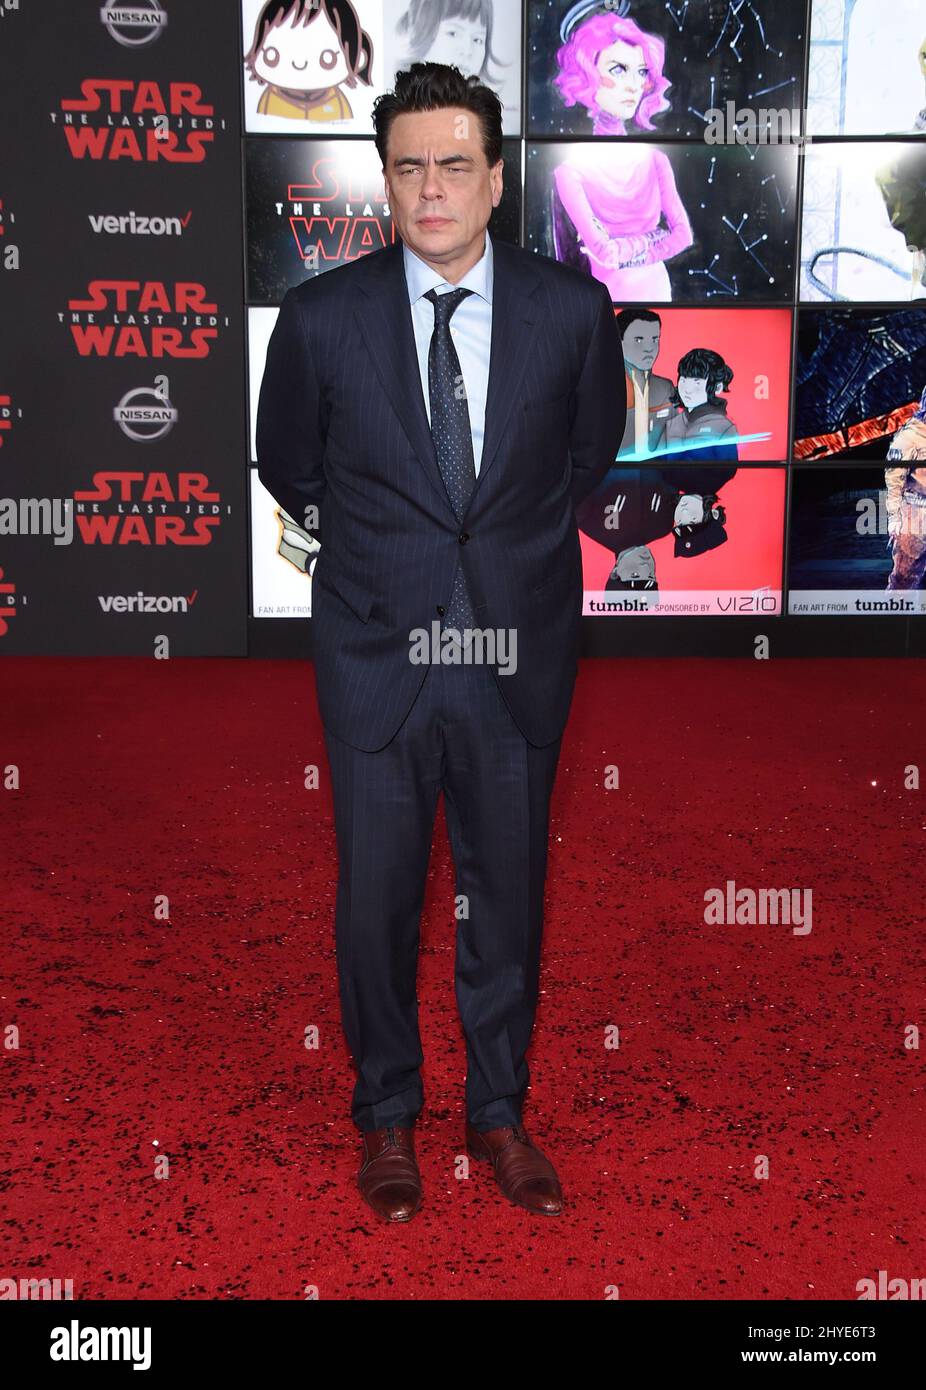 Star Wars: The Last Jedi': Benicio Del Toro Shares New Details About DJ